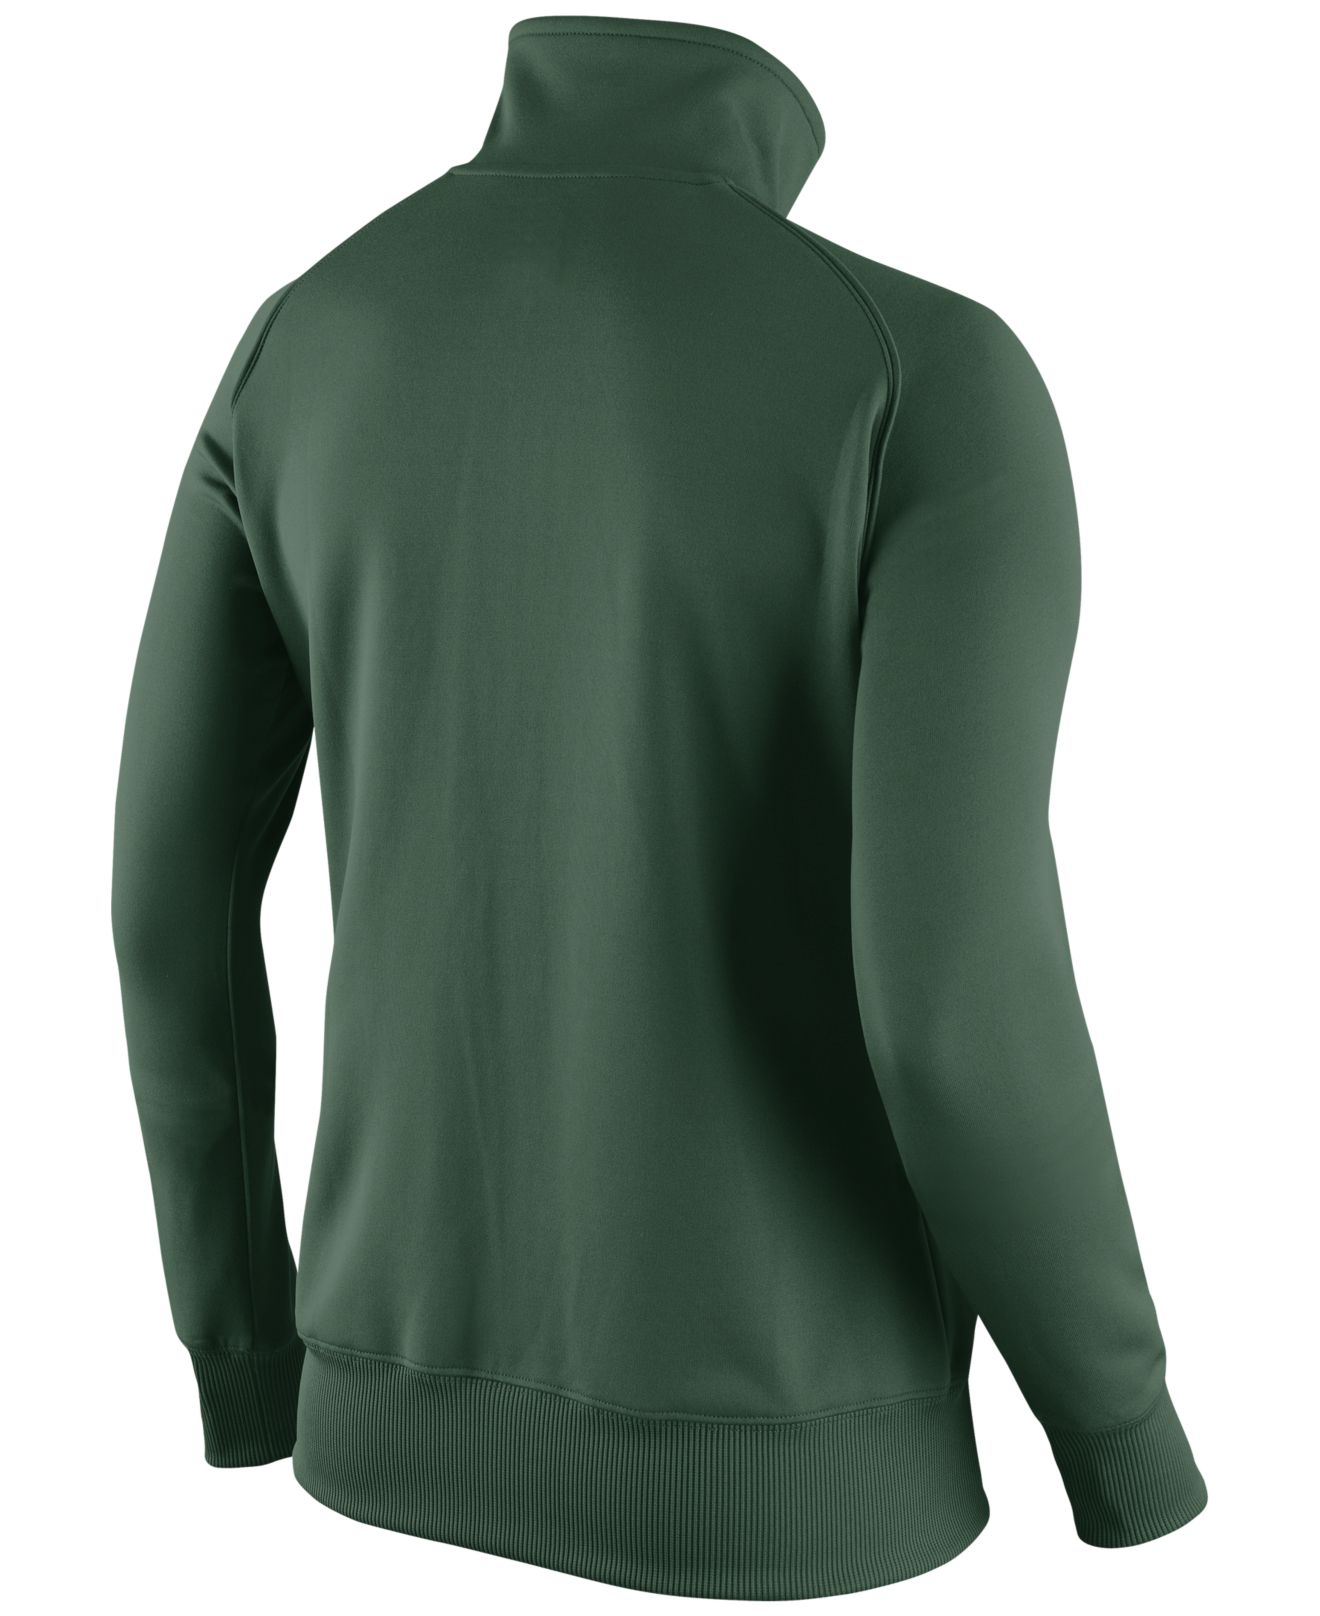 Lyst - Nike Women's New York Jets Mvp Track Jacket in Green for Men